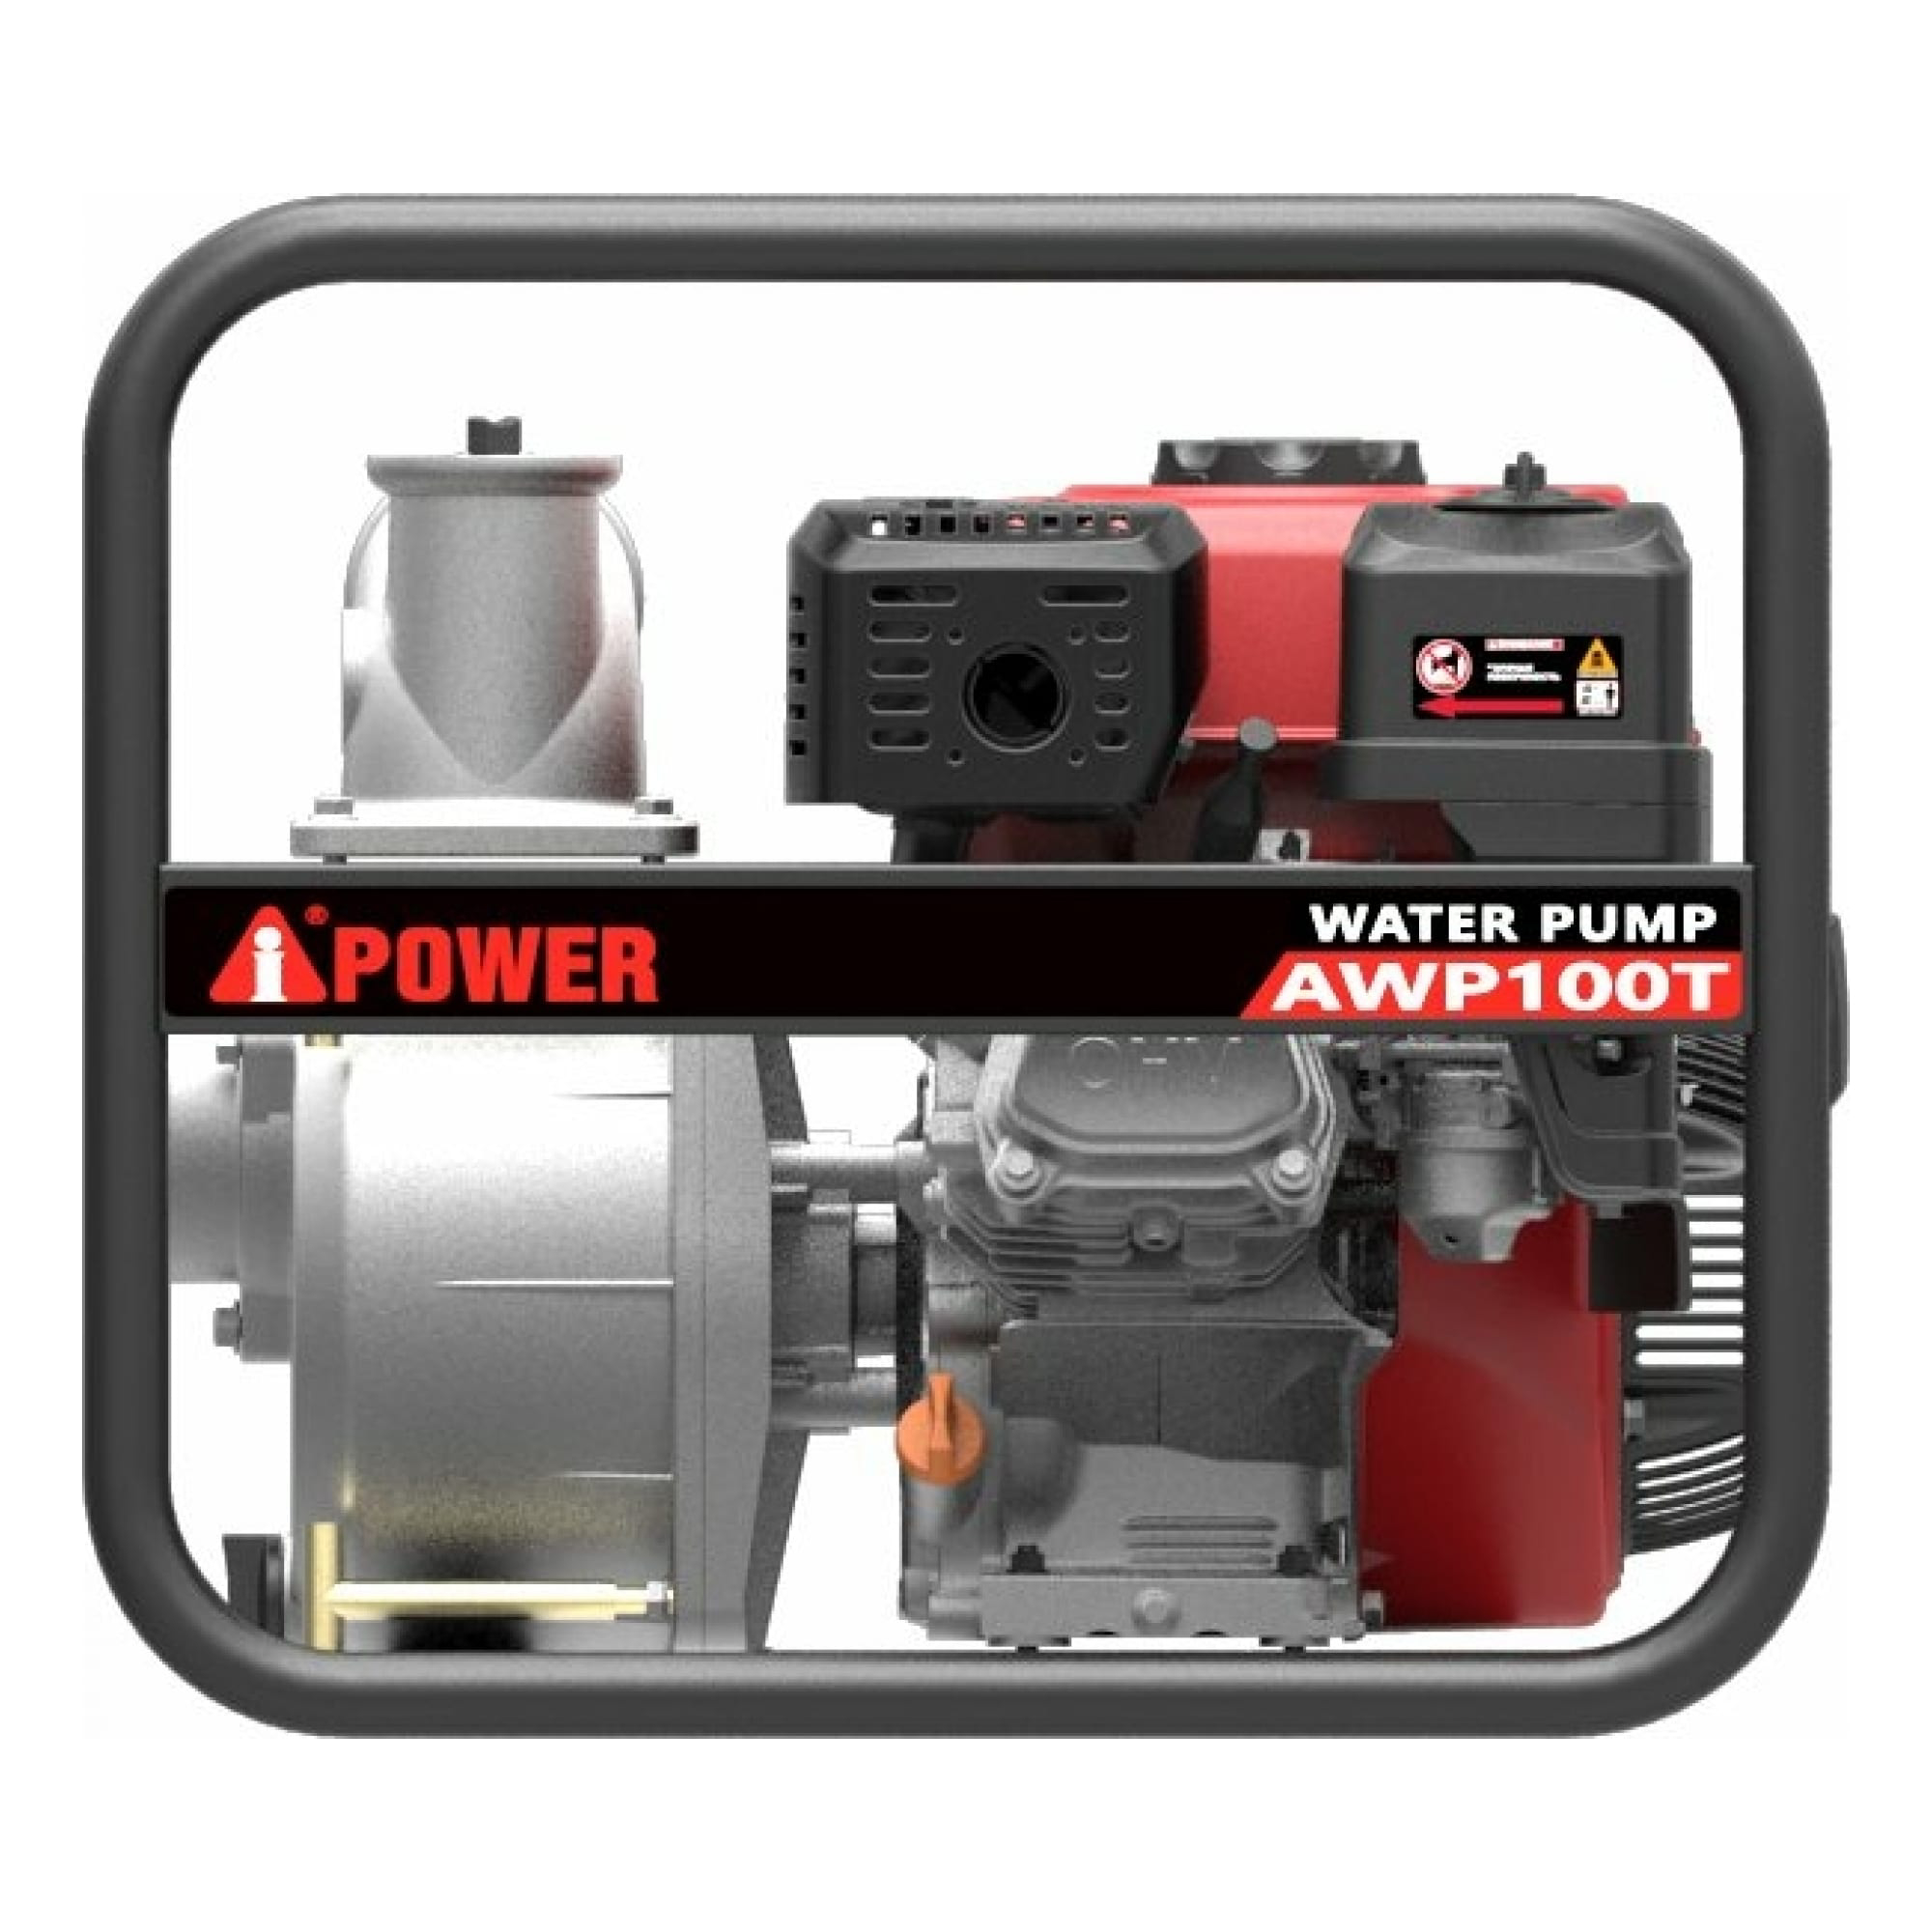 Бензиновая мотопомпа Power для грязной воды AWP 100T, цвет серый - фото 5